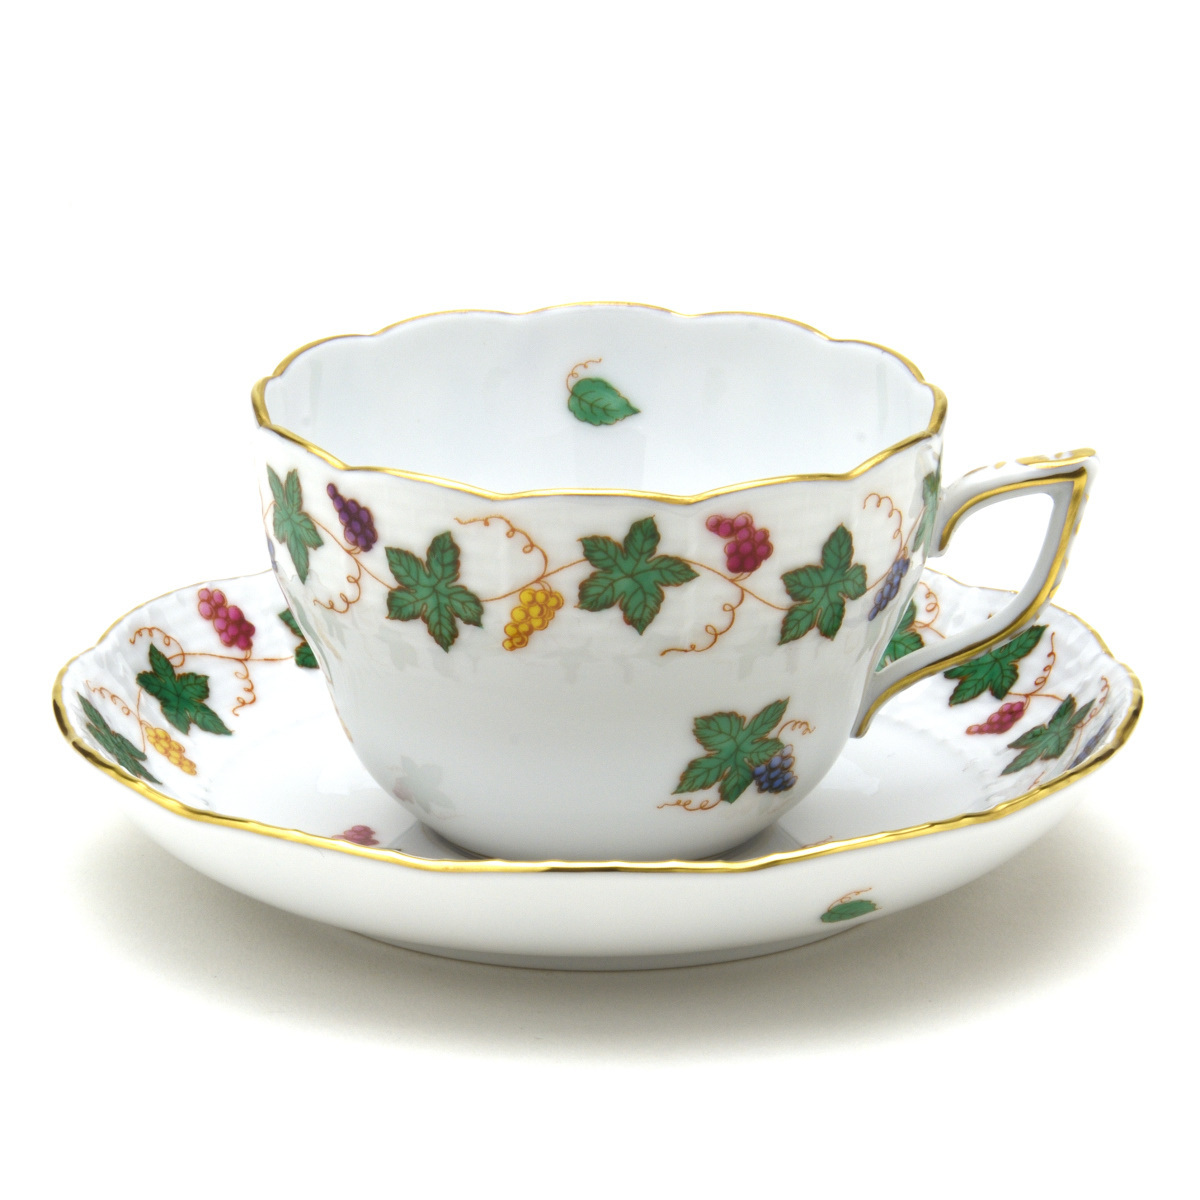 Herend Tasse polyvalente et soucoupe Raisin Garland Vaisselle en porcelaine peinte à la main Tasse à café/thé Vaisselle fabriquée en Hongrie Nouveau Herend, ustensiles à thé, tasse et soucoupe, café, Pour le thé et le thé